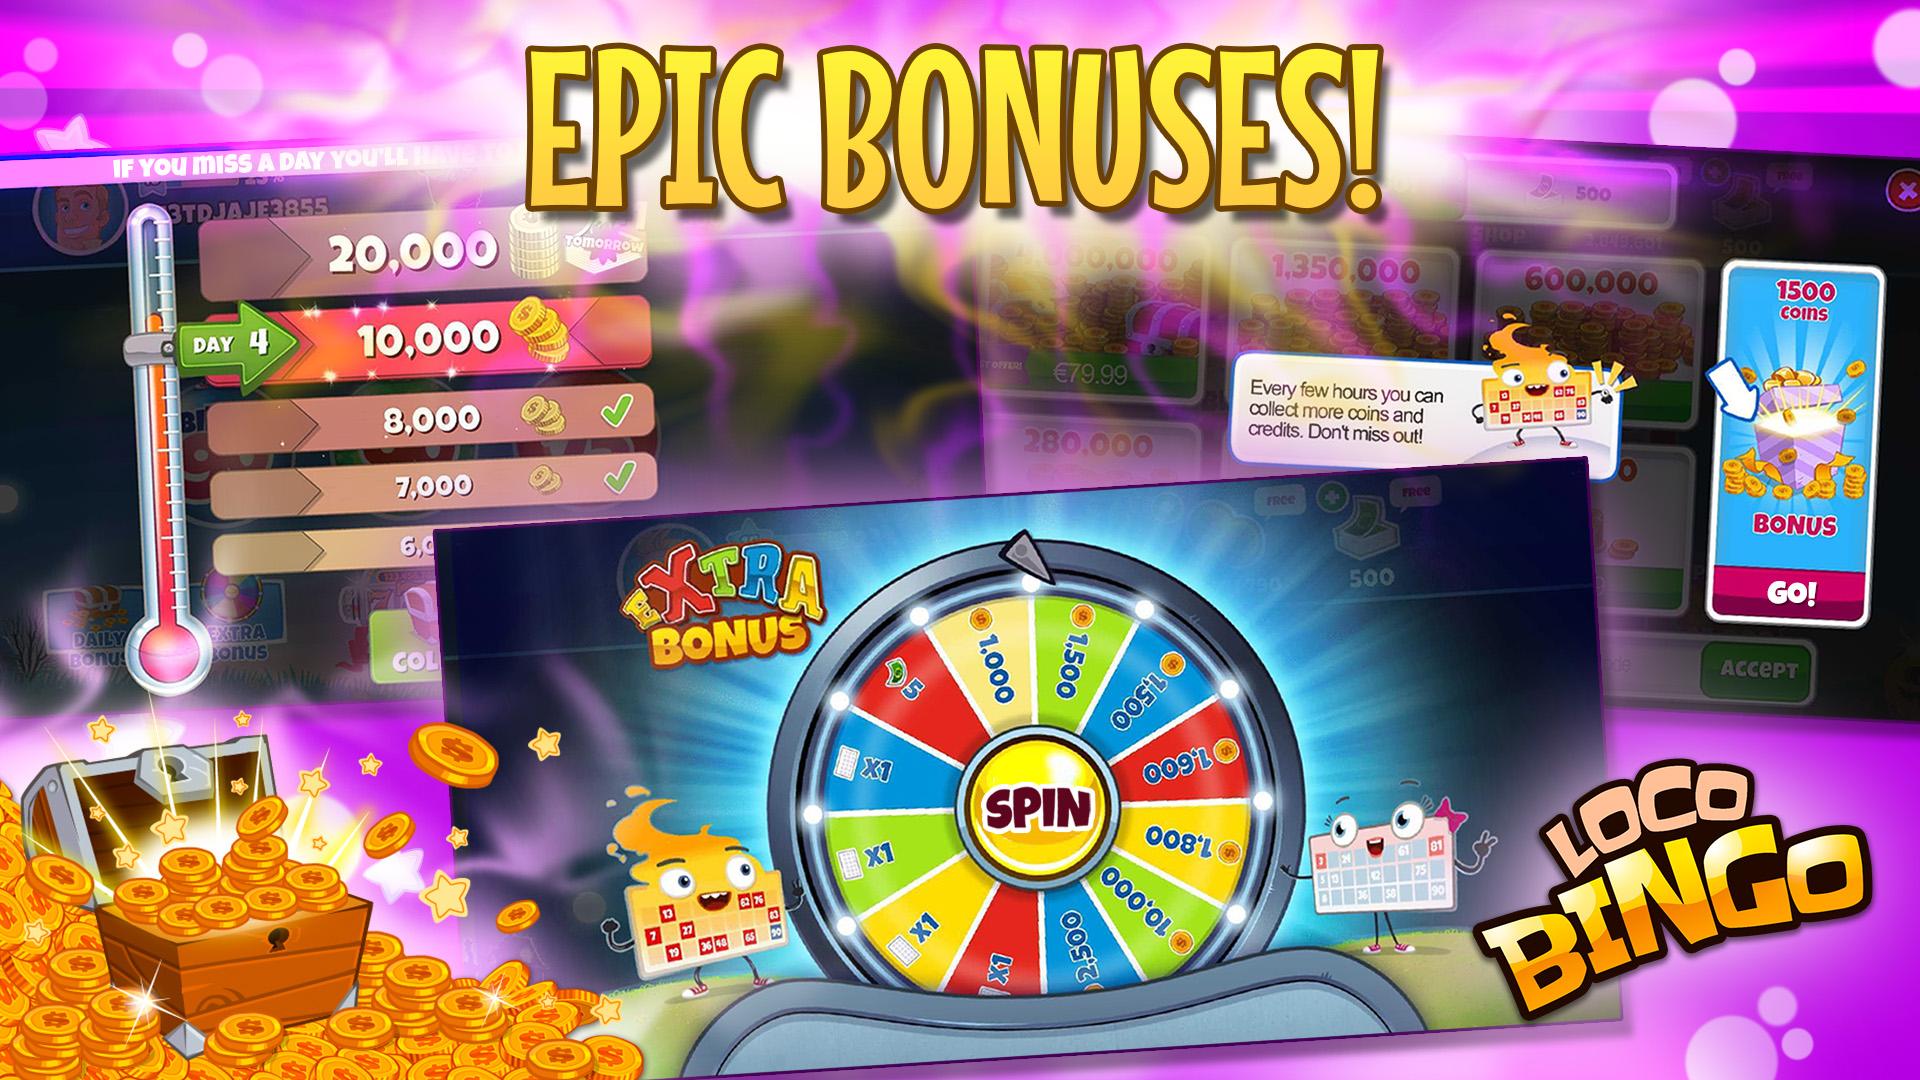 Loco bingo. Casino games slots 2021.6.0 Screenshot 24